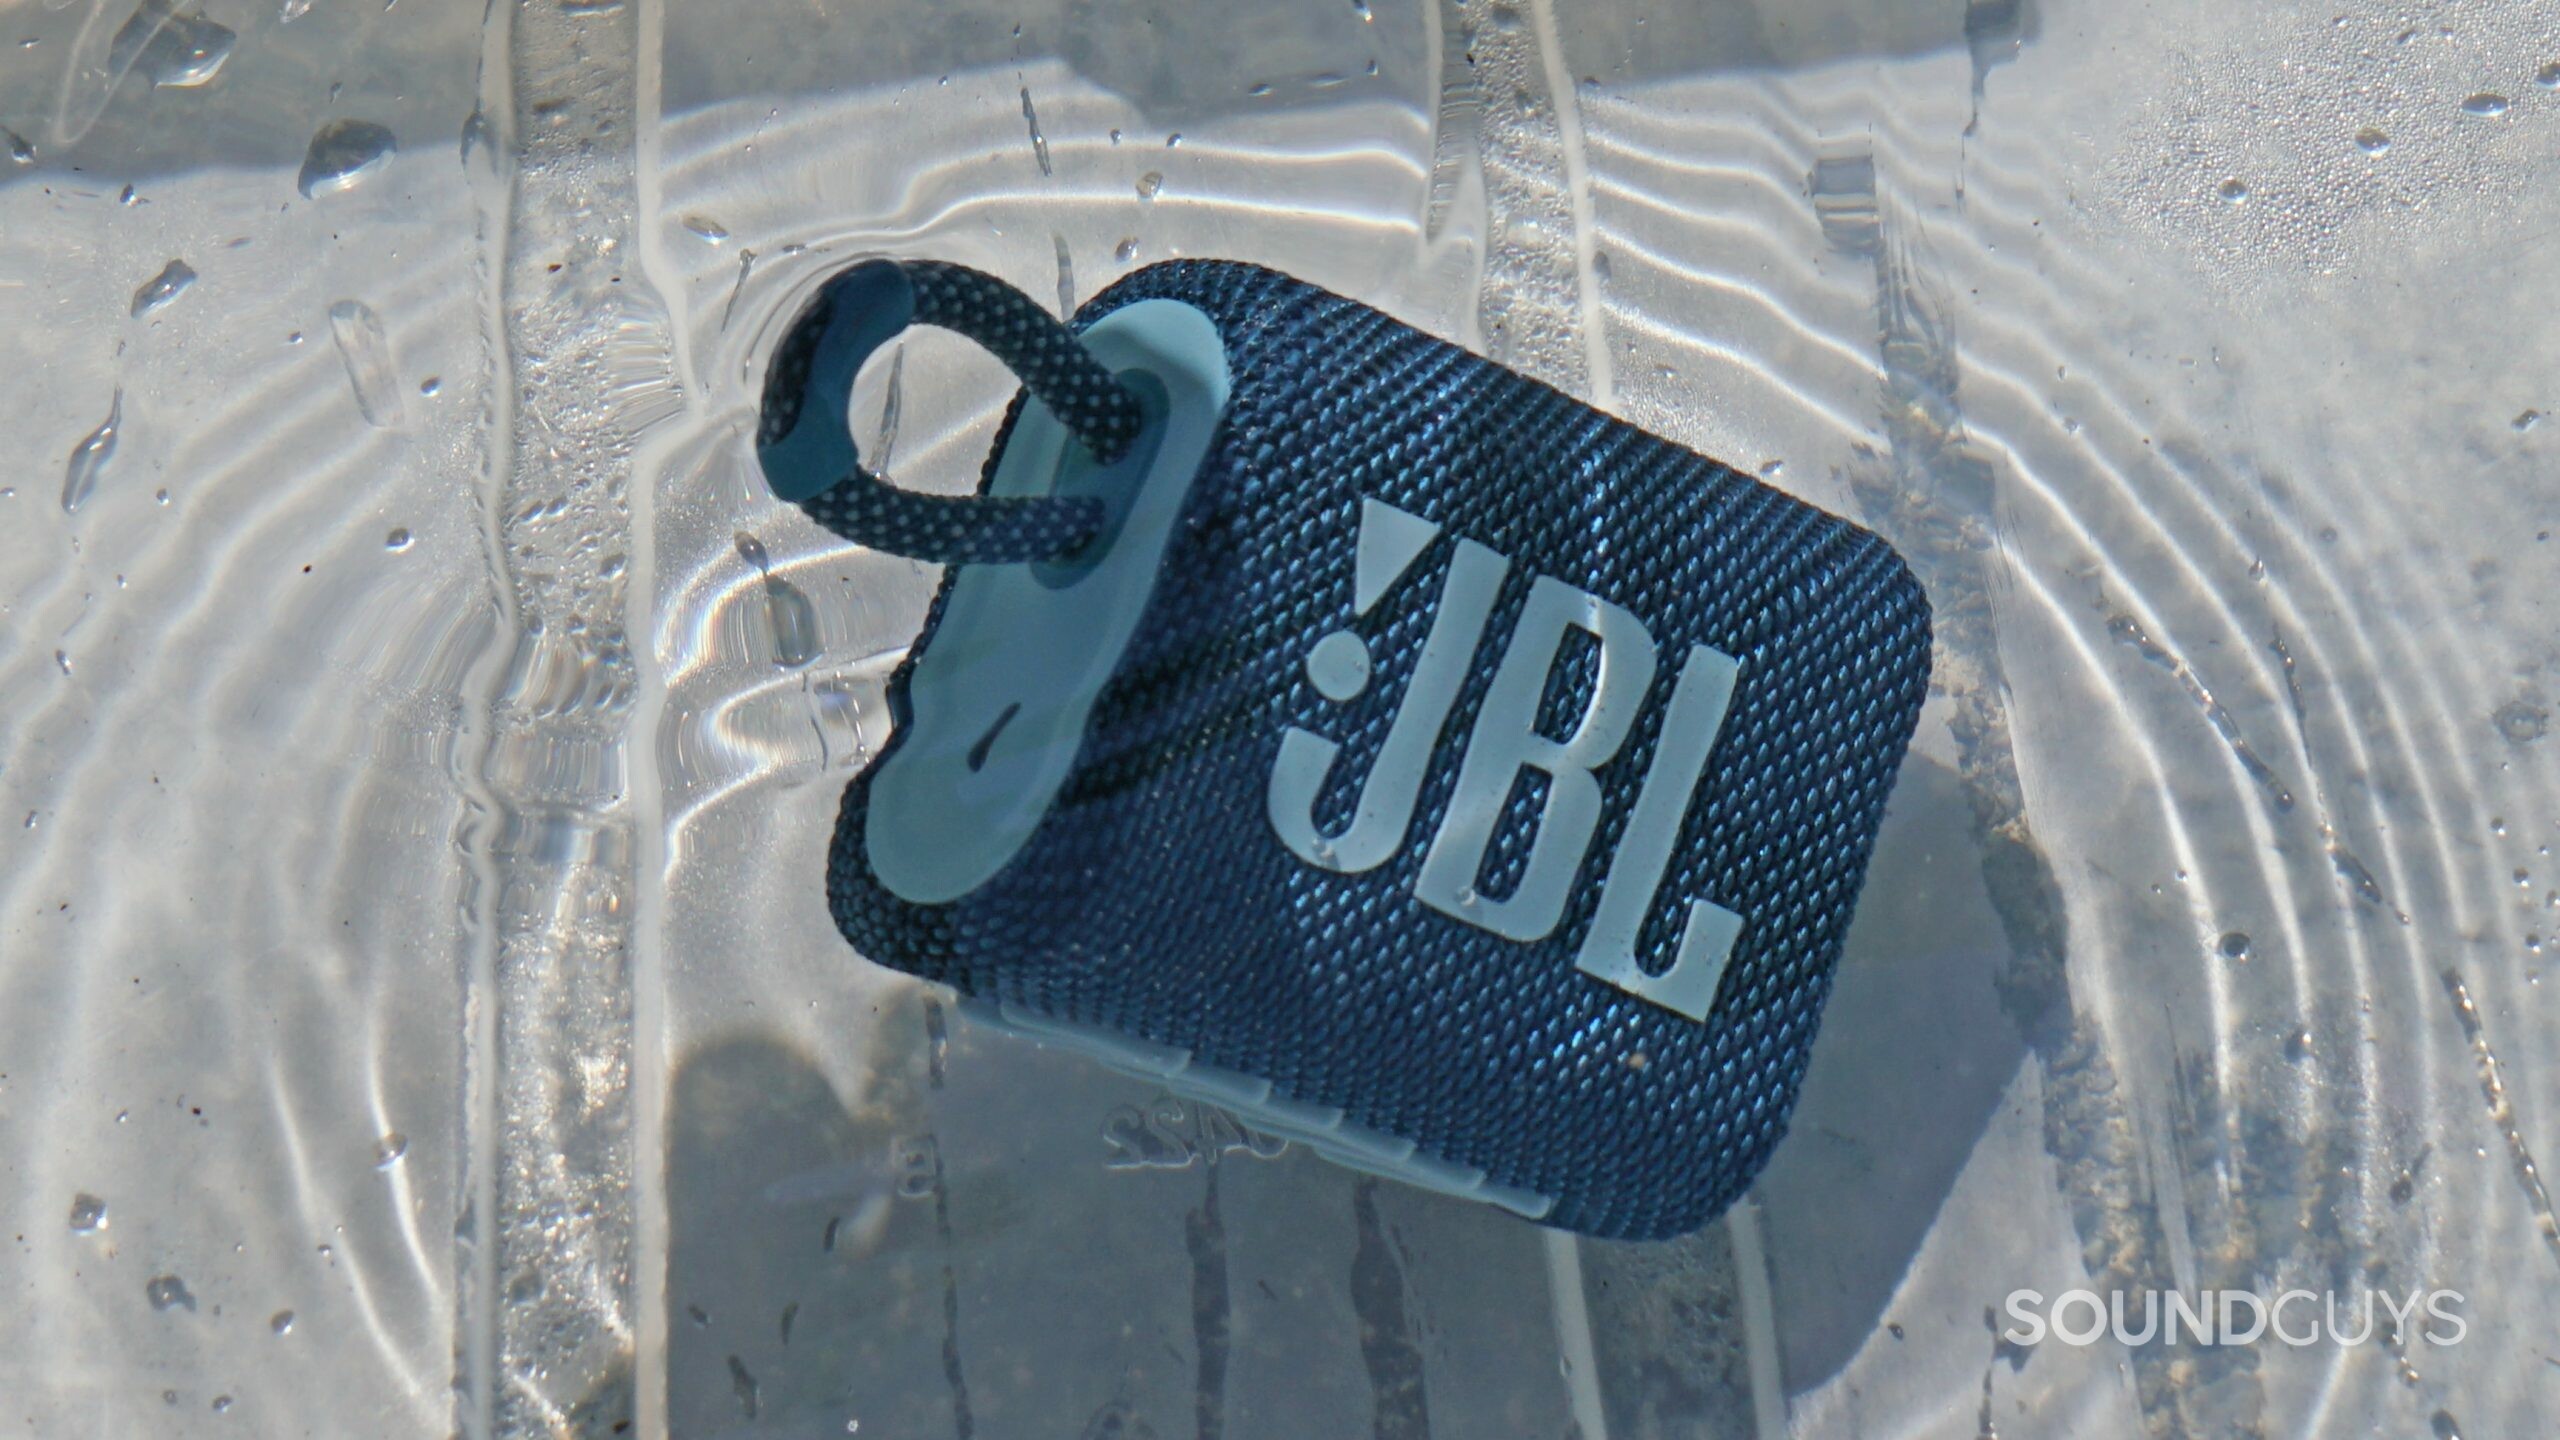 JBL Go 3 - Speaker - Portable - Wireless - Bluetooth - 4.2 Watt -  Waterproof - Teal 